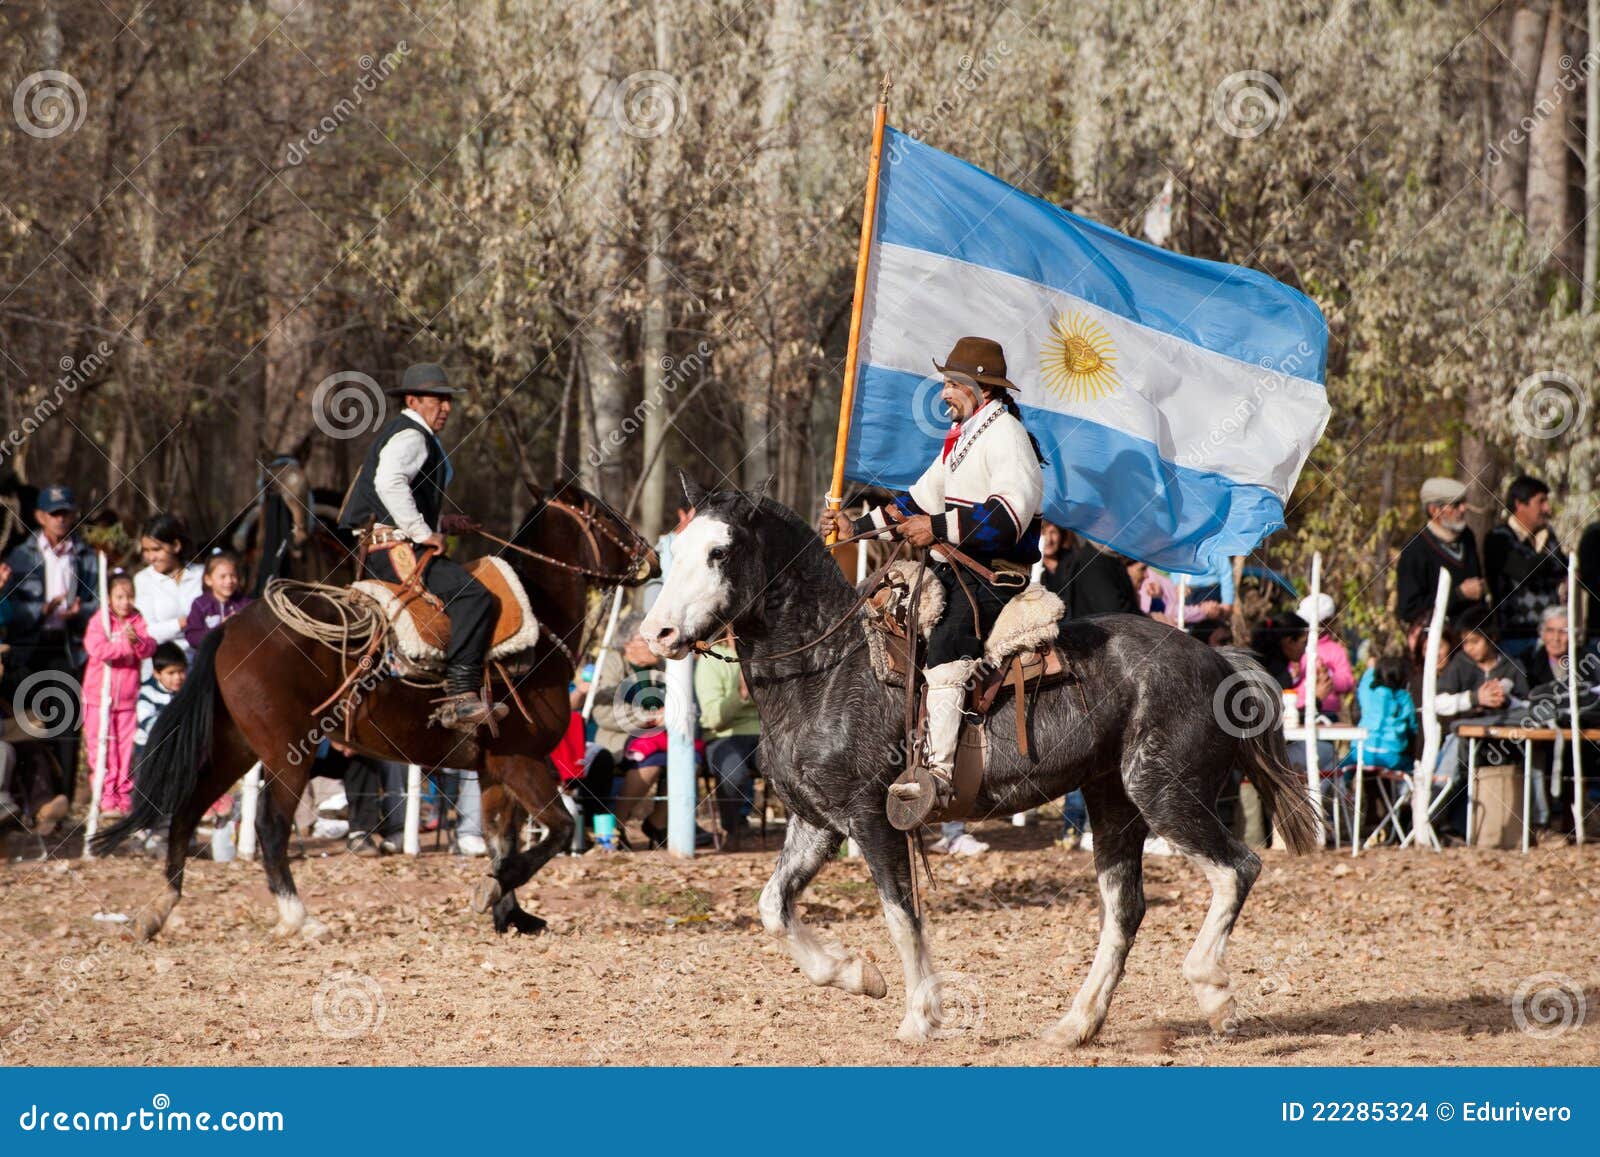 ein-gaucho-mit-der-argentinischen-markierungsfahne-die-ein-pferd-e-reitet-22285324.jpg